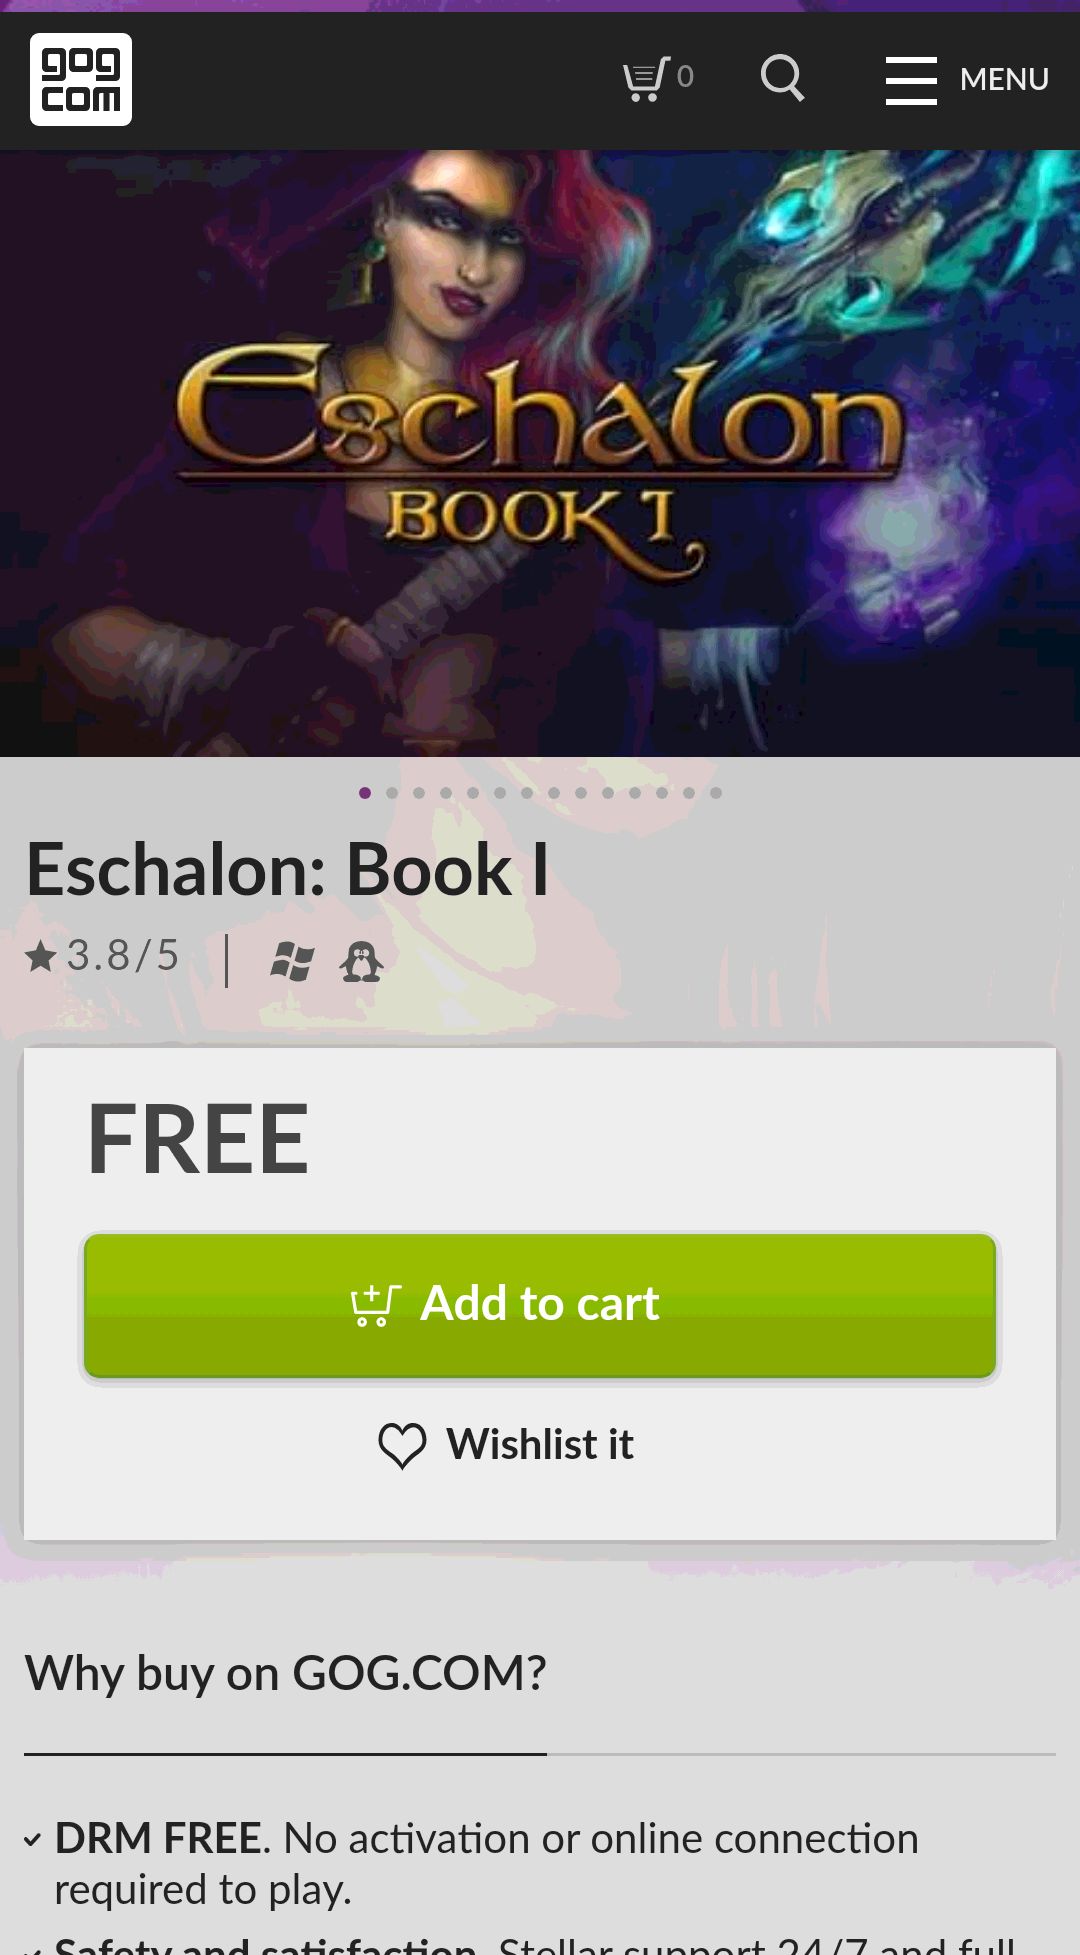 Eschalon: Book I on GOG.com喜加一